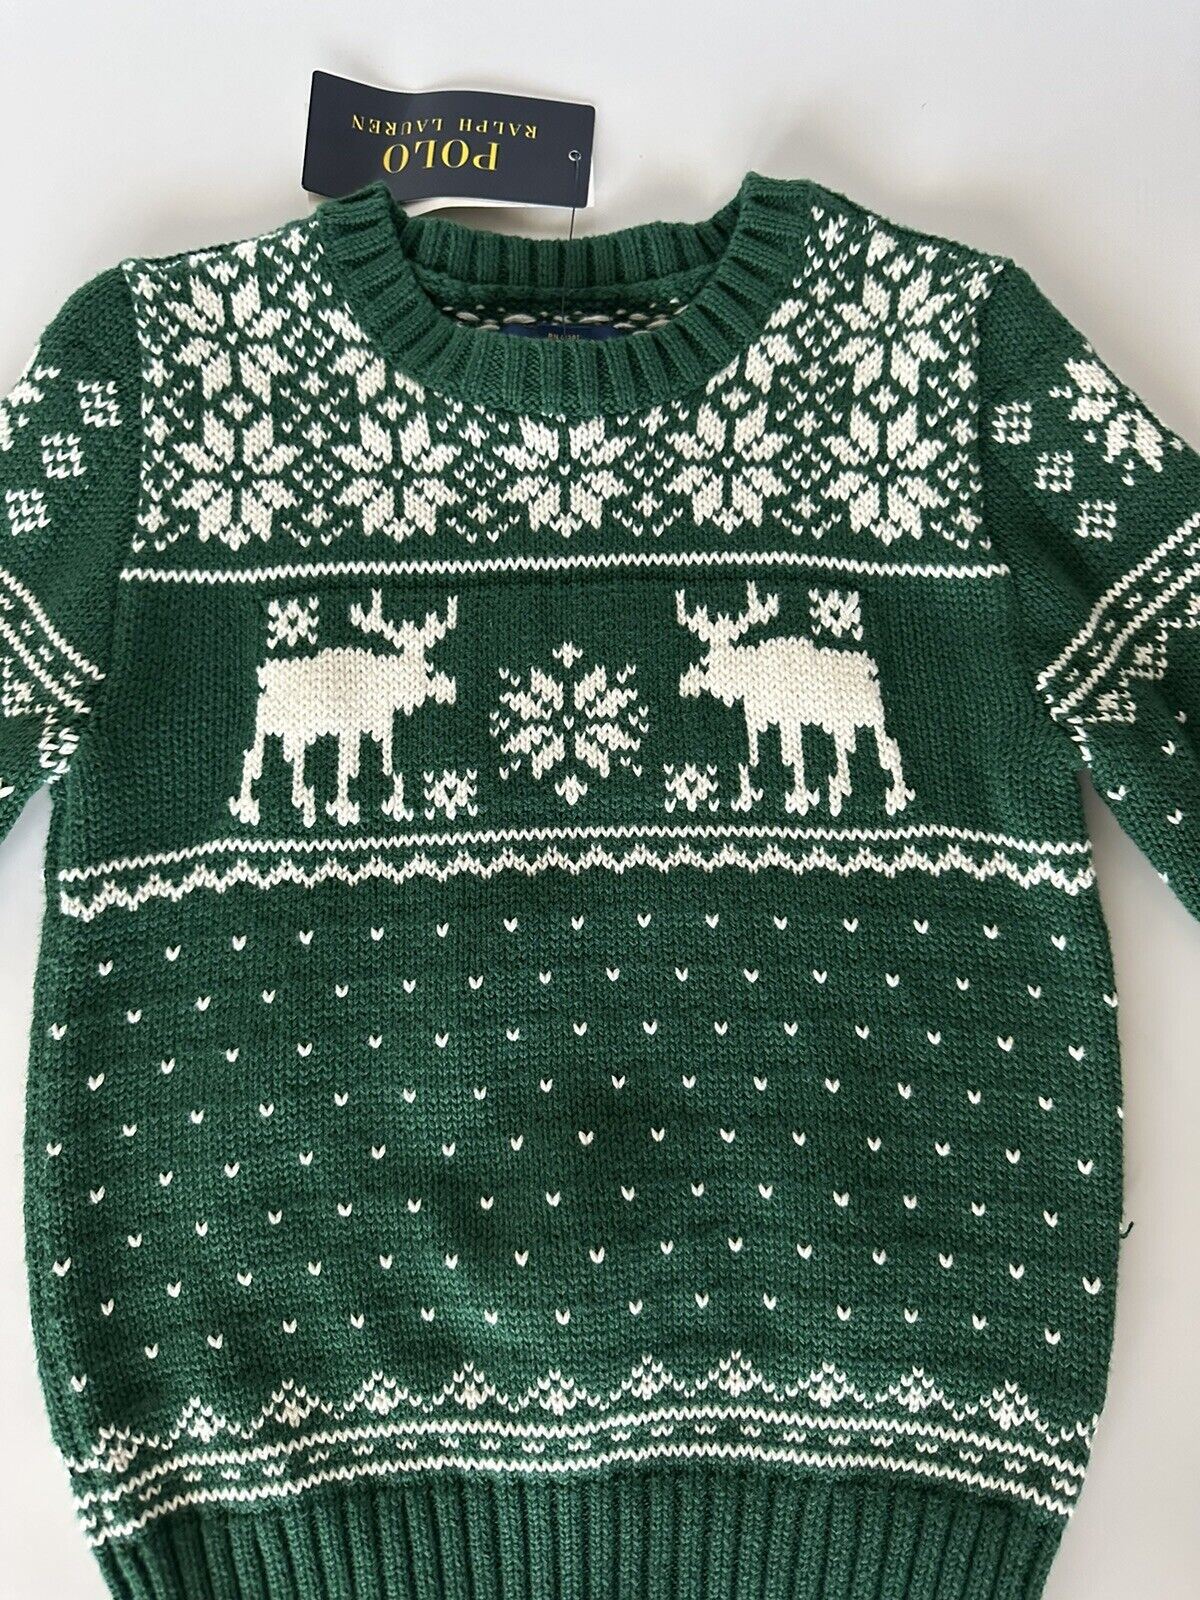 Neu mit Etikett: Polo Ralph Lauren Jungen-Pullover aus grüner Baumwolle/Wolle, Größe 4T